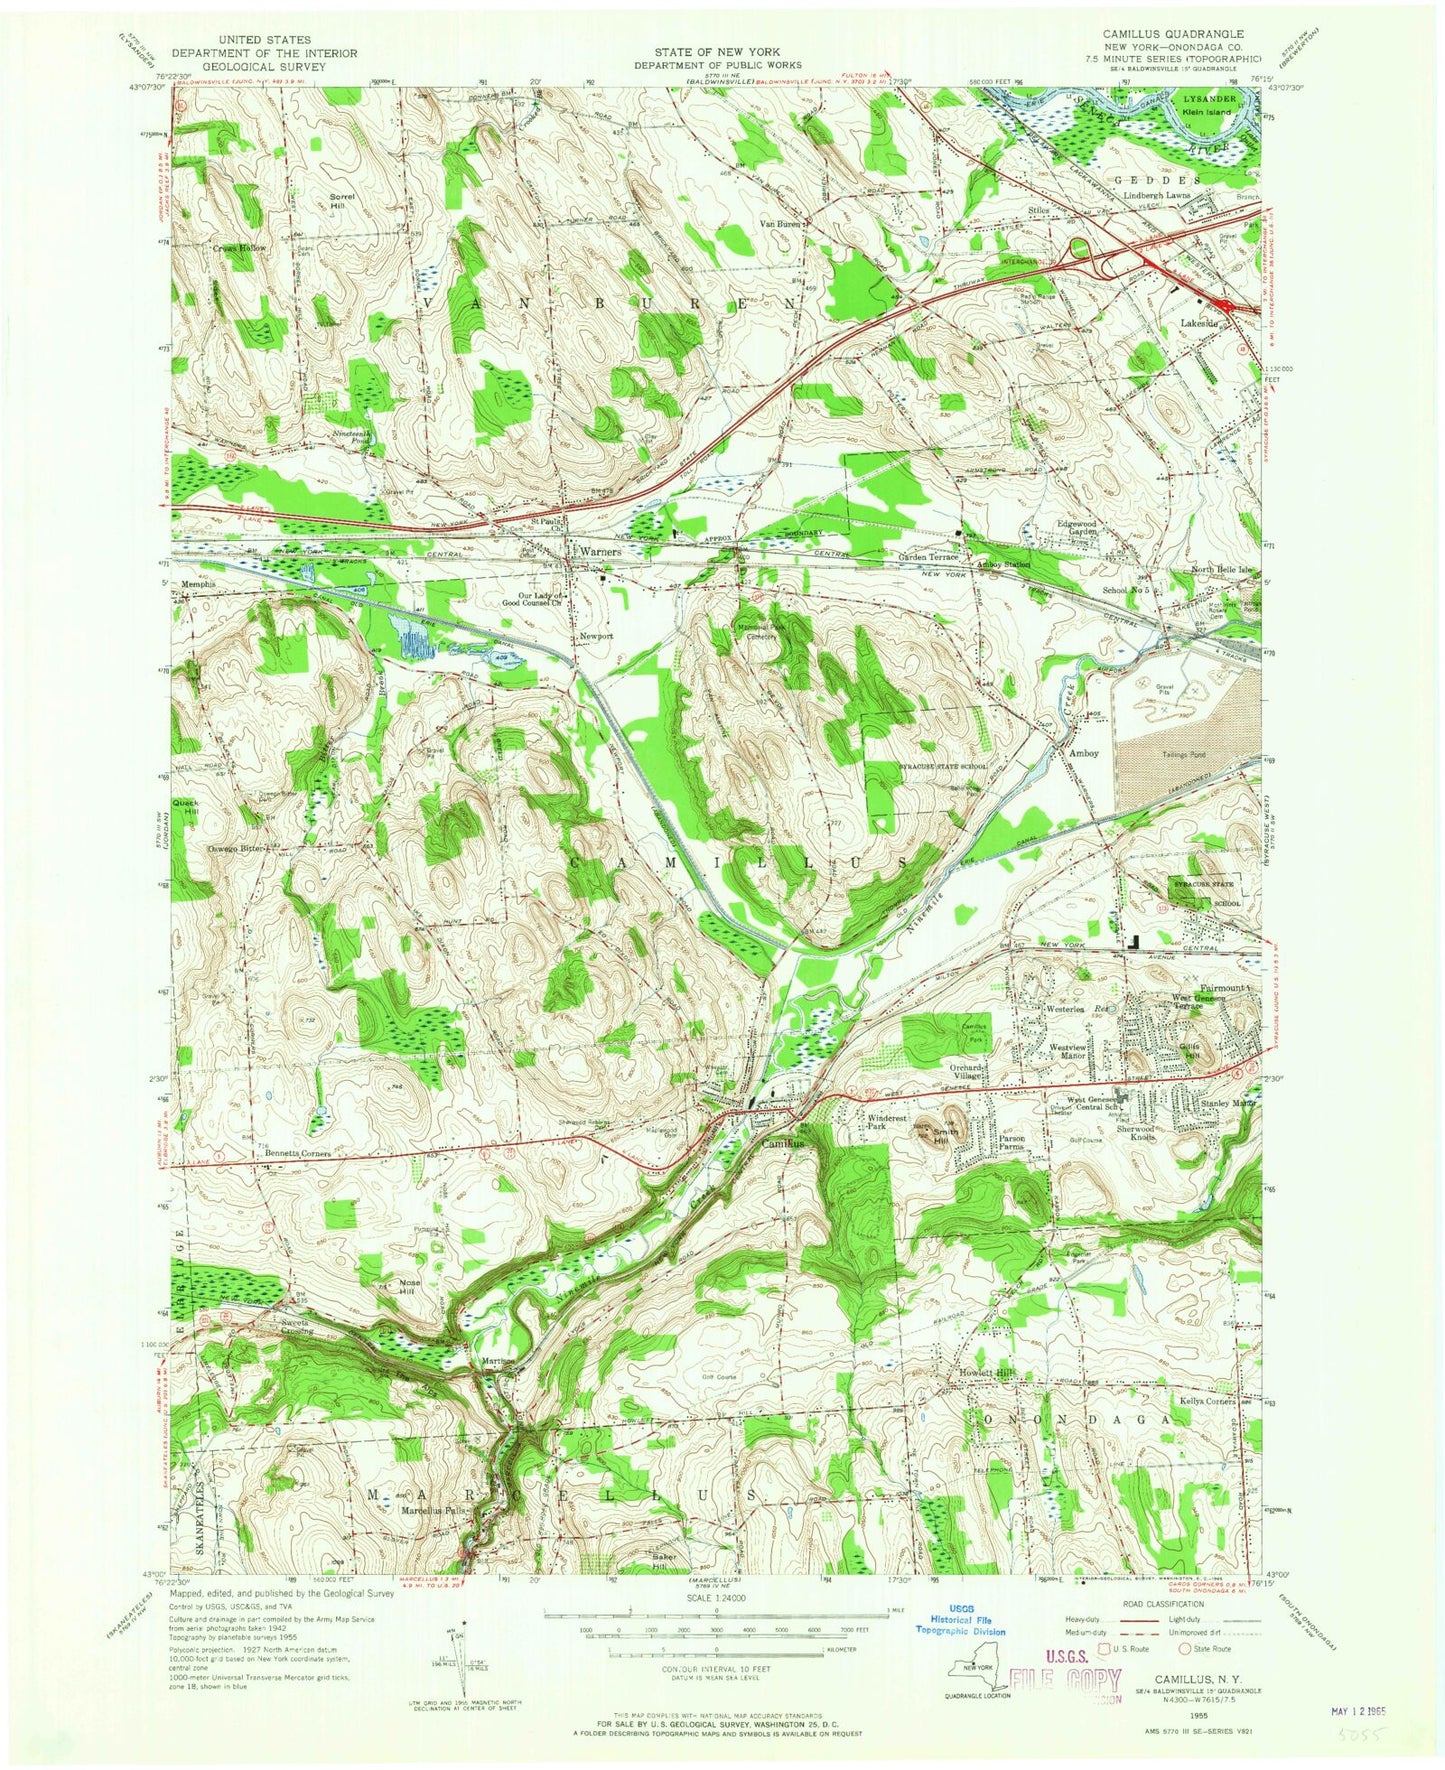 Classic USGS Camillus New York 7.5'x7.5' Topo Map Image